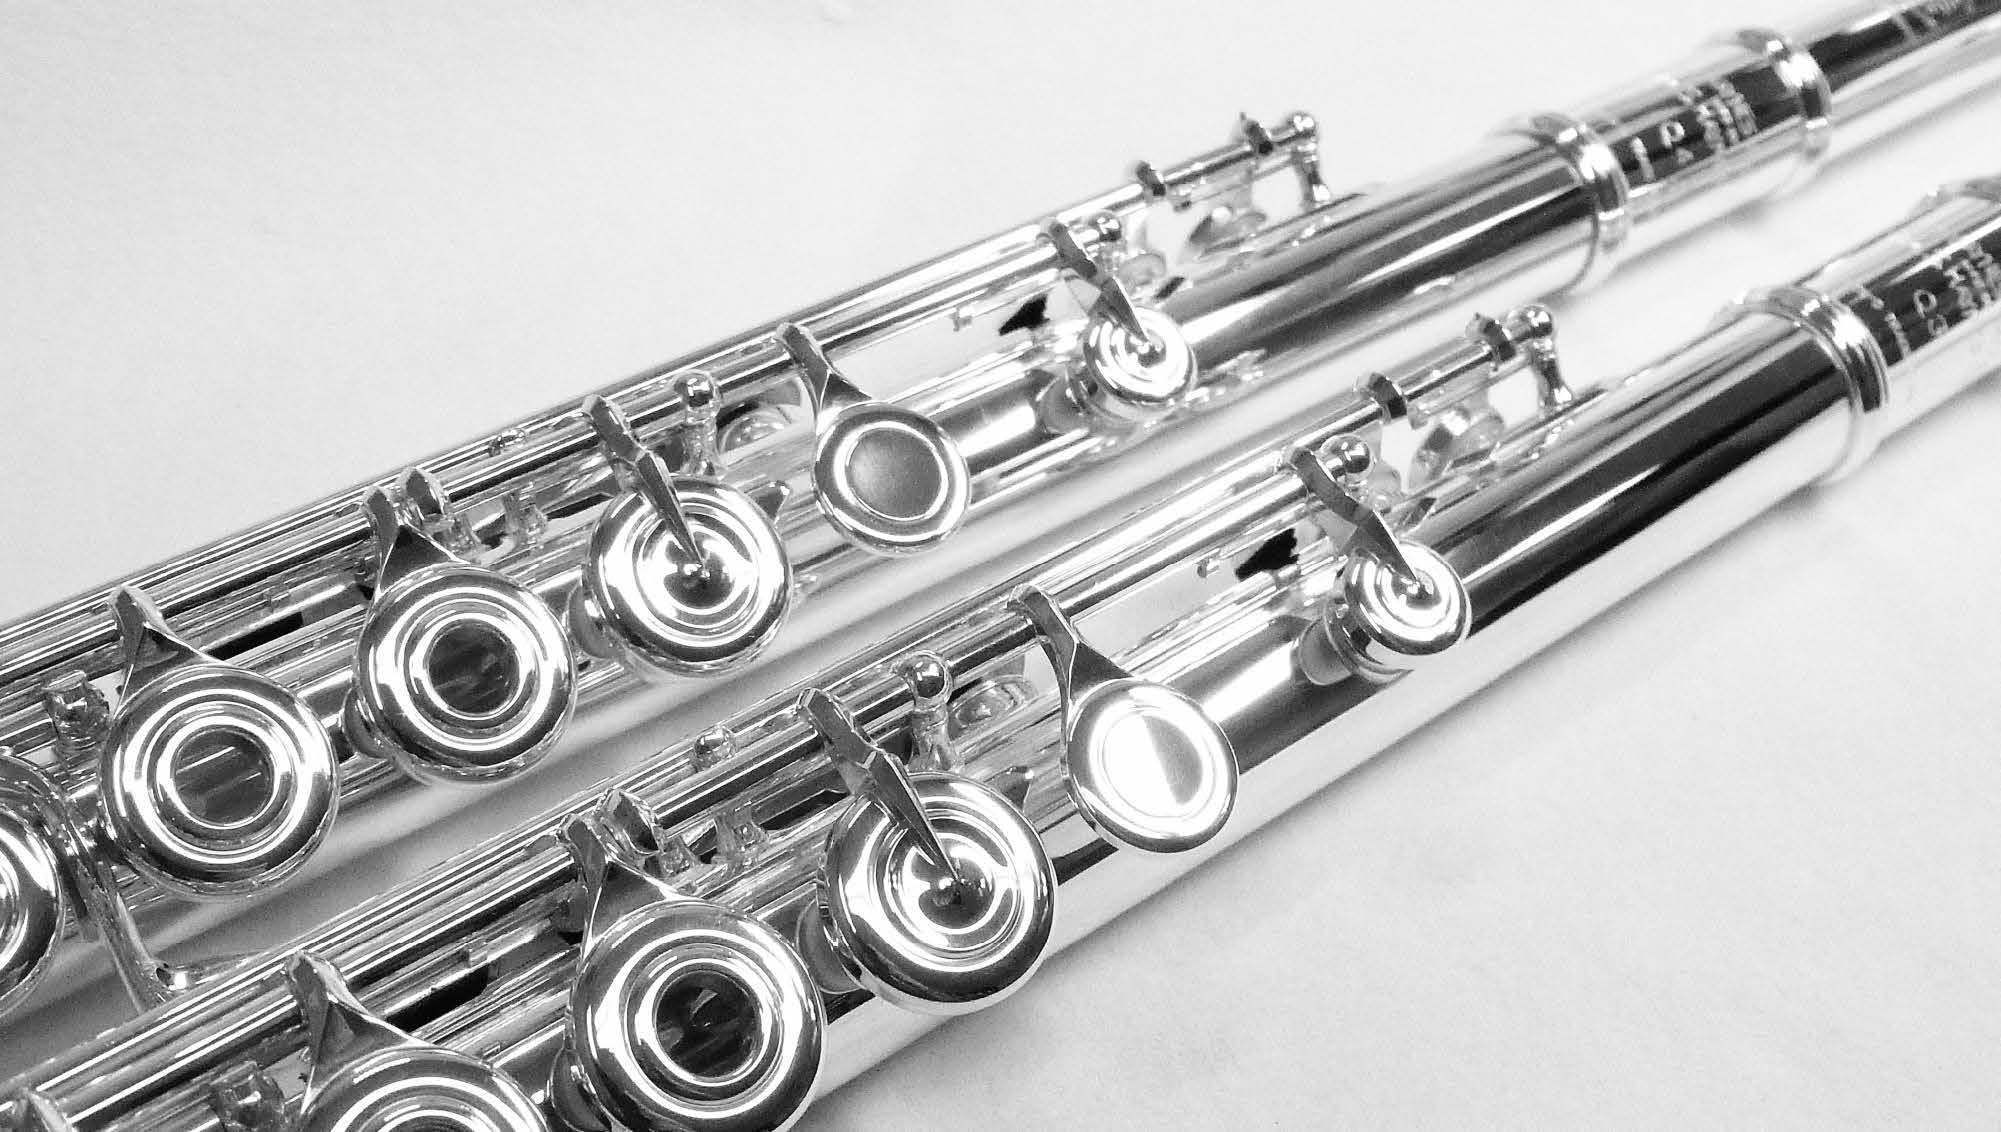 Dolce楽器ショップインフォメーションヘインズの新しい総銀製モデル「Ｑシリーズ」。【PIPERS 458号掲載】 | ドルチェ楽器